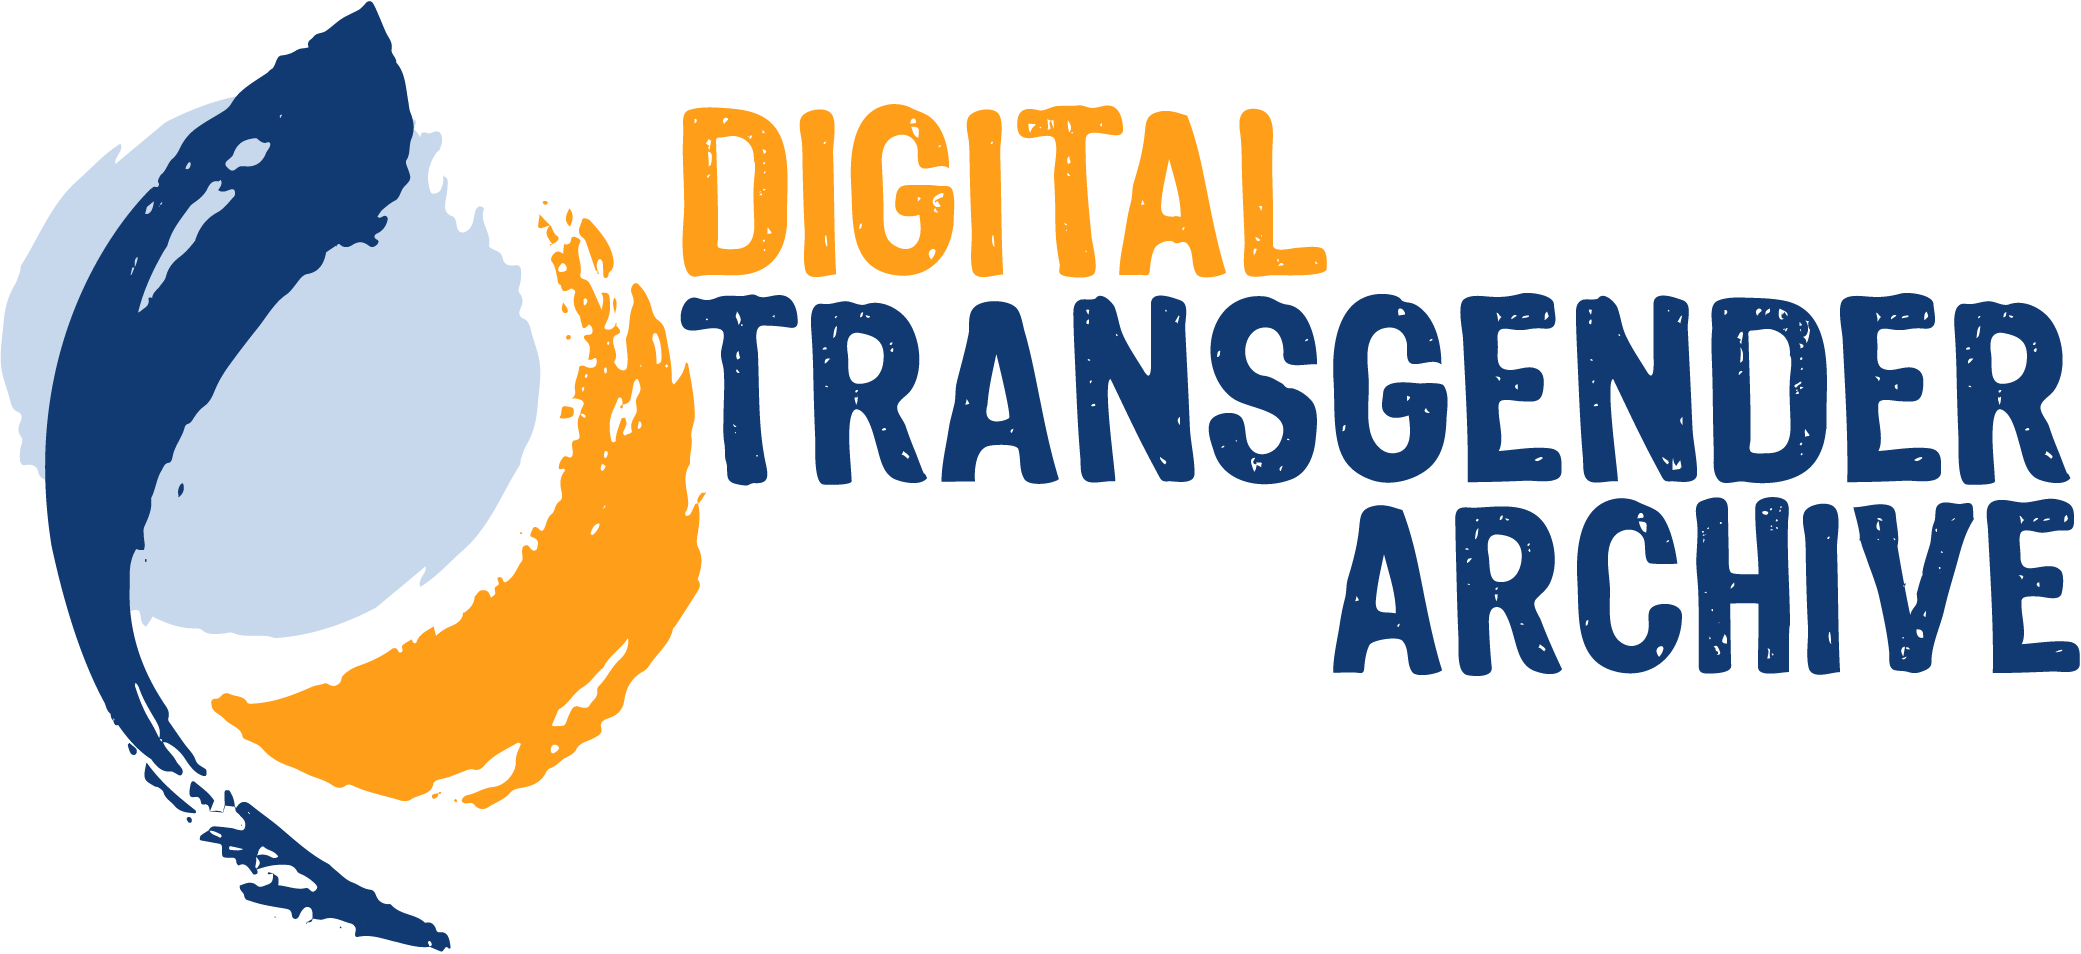 Digital Transgender Archive.png